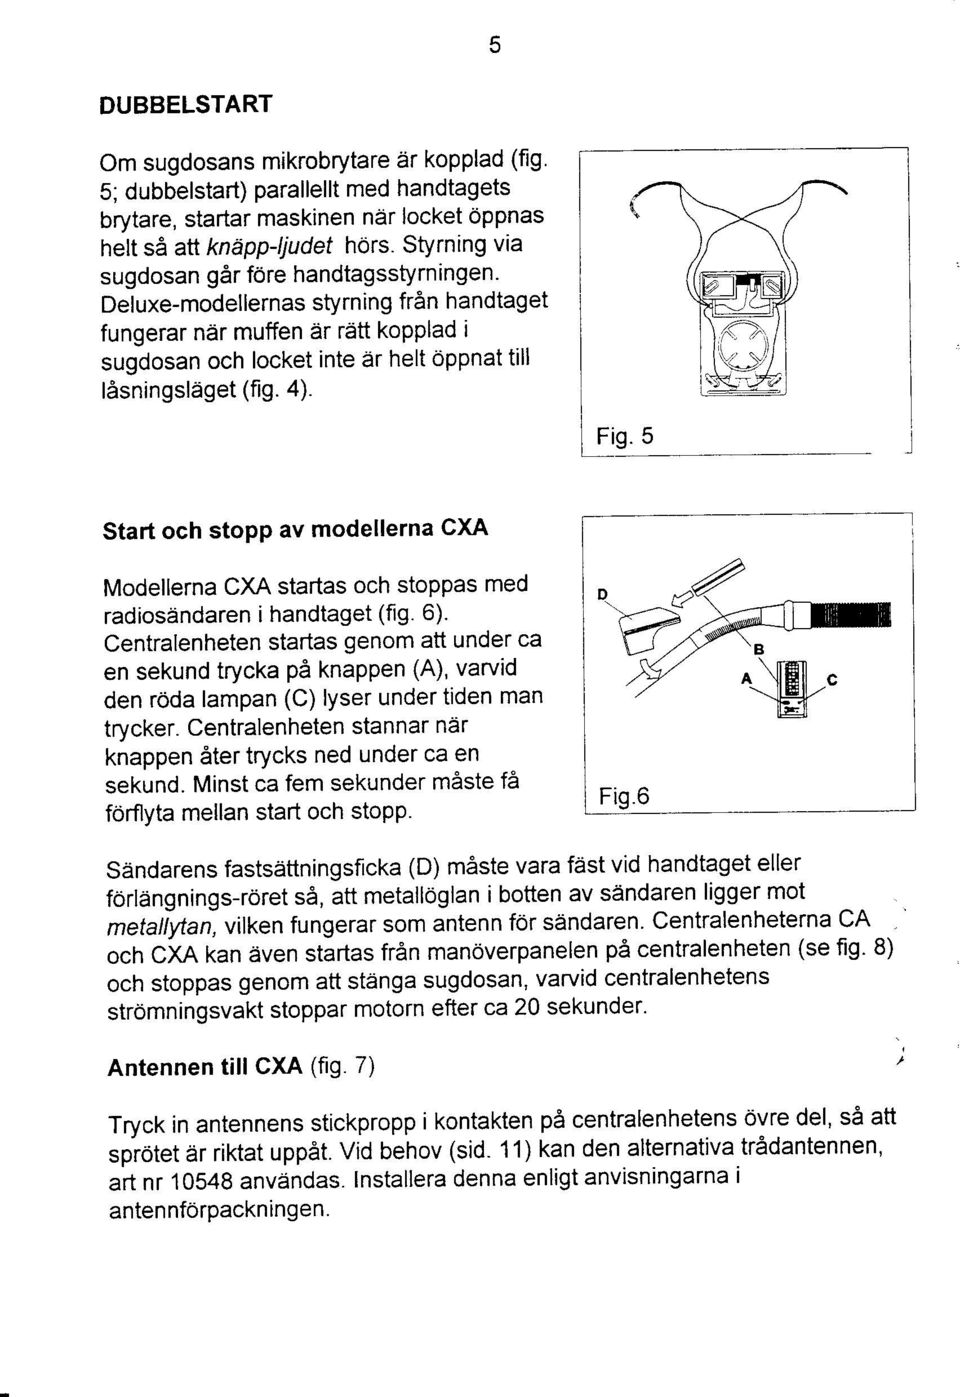 Start och stopp av modellerna CXA Modellerna CXA startas och stoppas med radiosiindaren i handtaget (fig. 6).